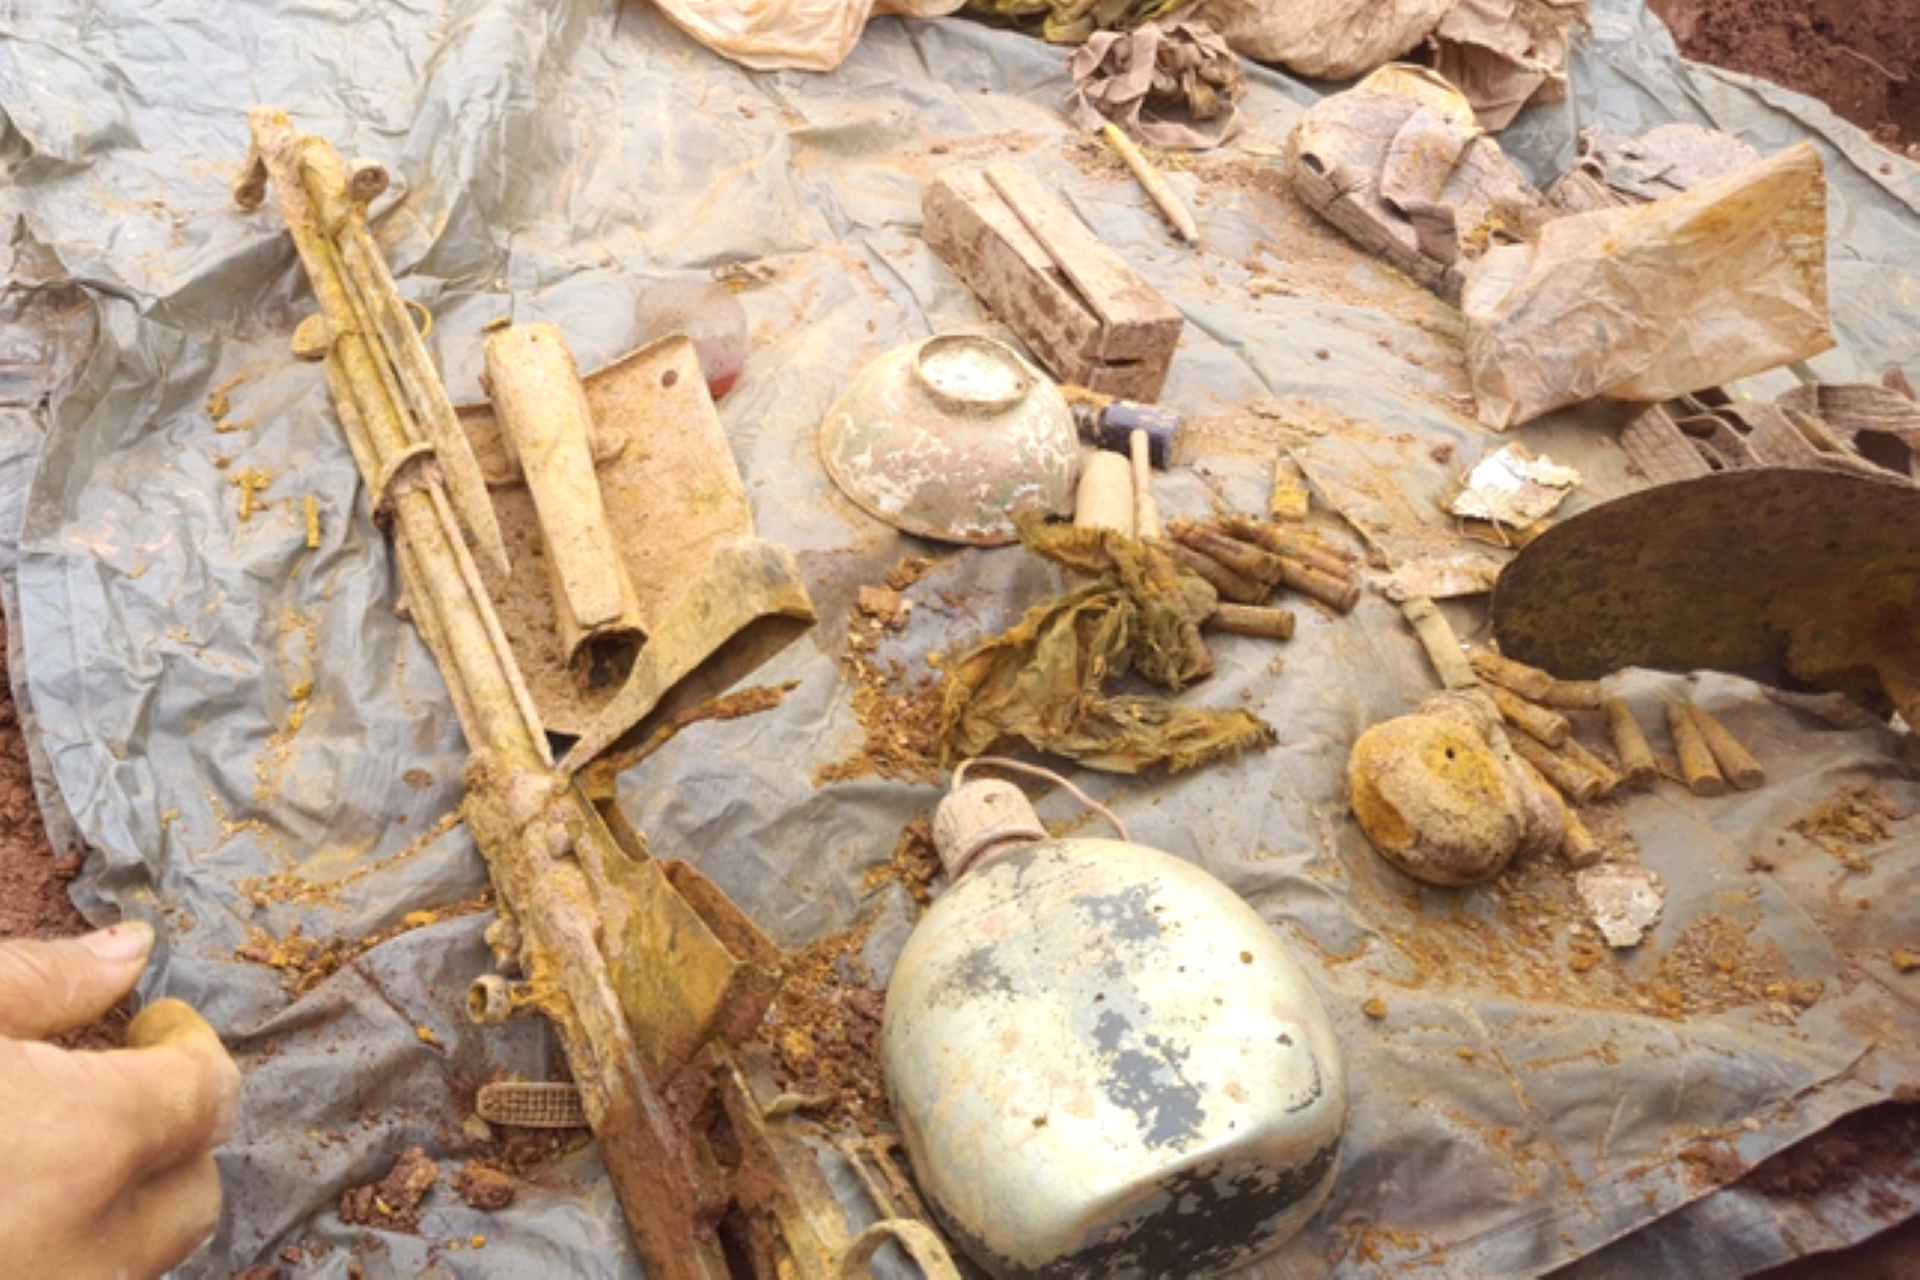 Bình tông, bát ăn cơm… được tìm thấy trong quá trình tìm kiếm và quy tập hài cốt liệt sĩ tại tỉnh Xây Xổm Bun, Lào.